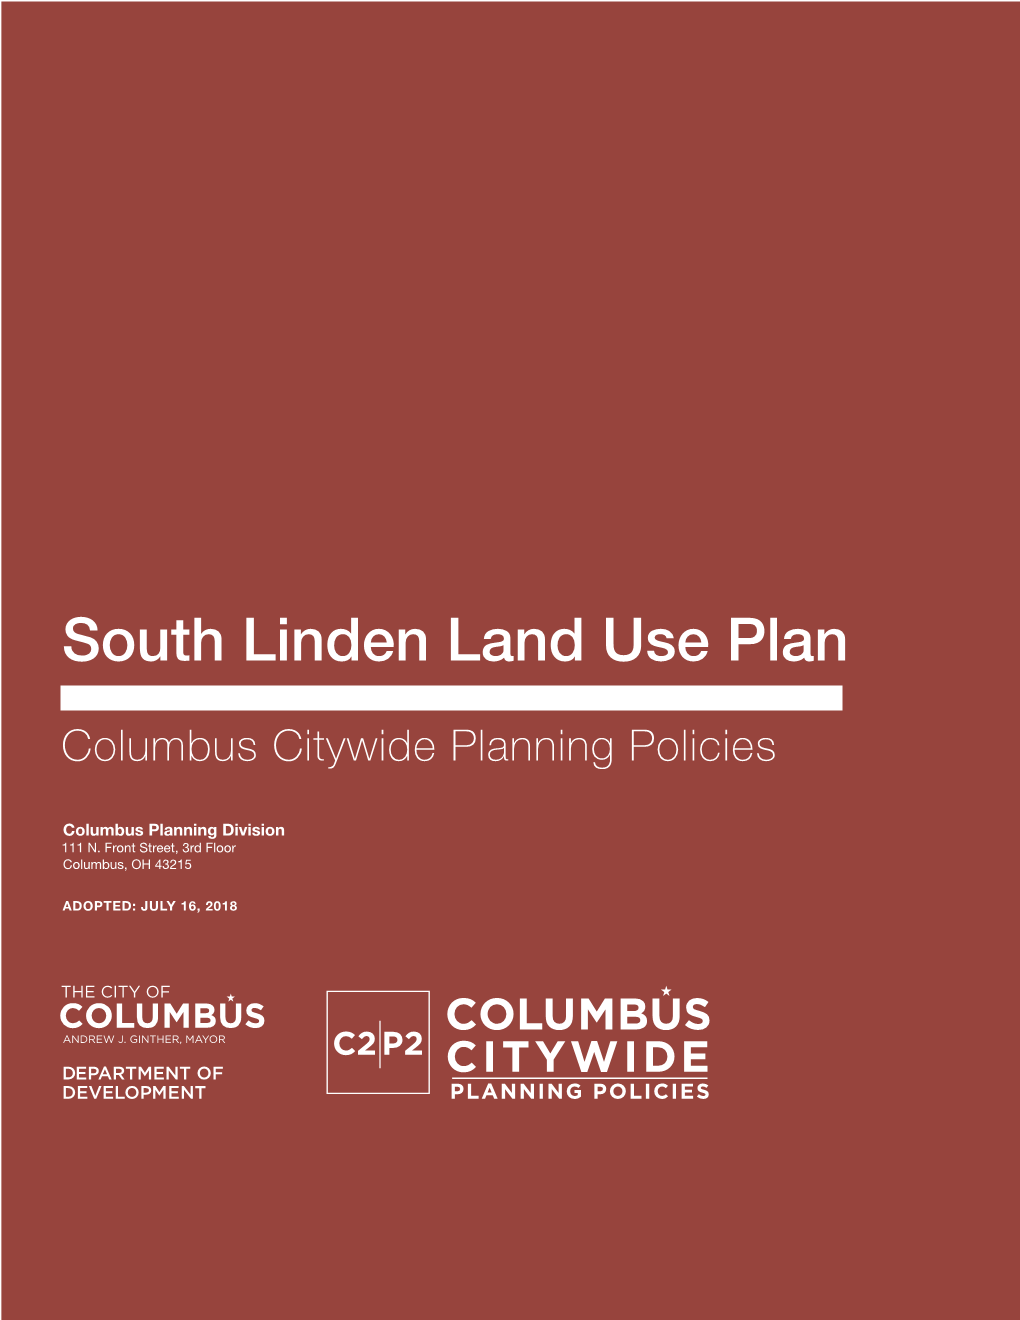 South Linden Land Use Plan (C2P2)